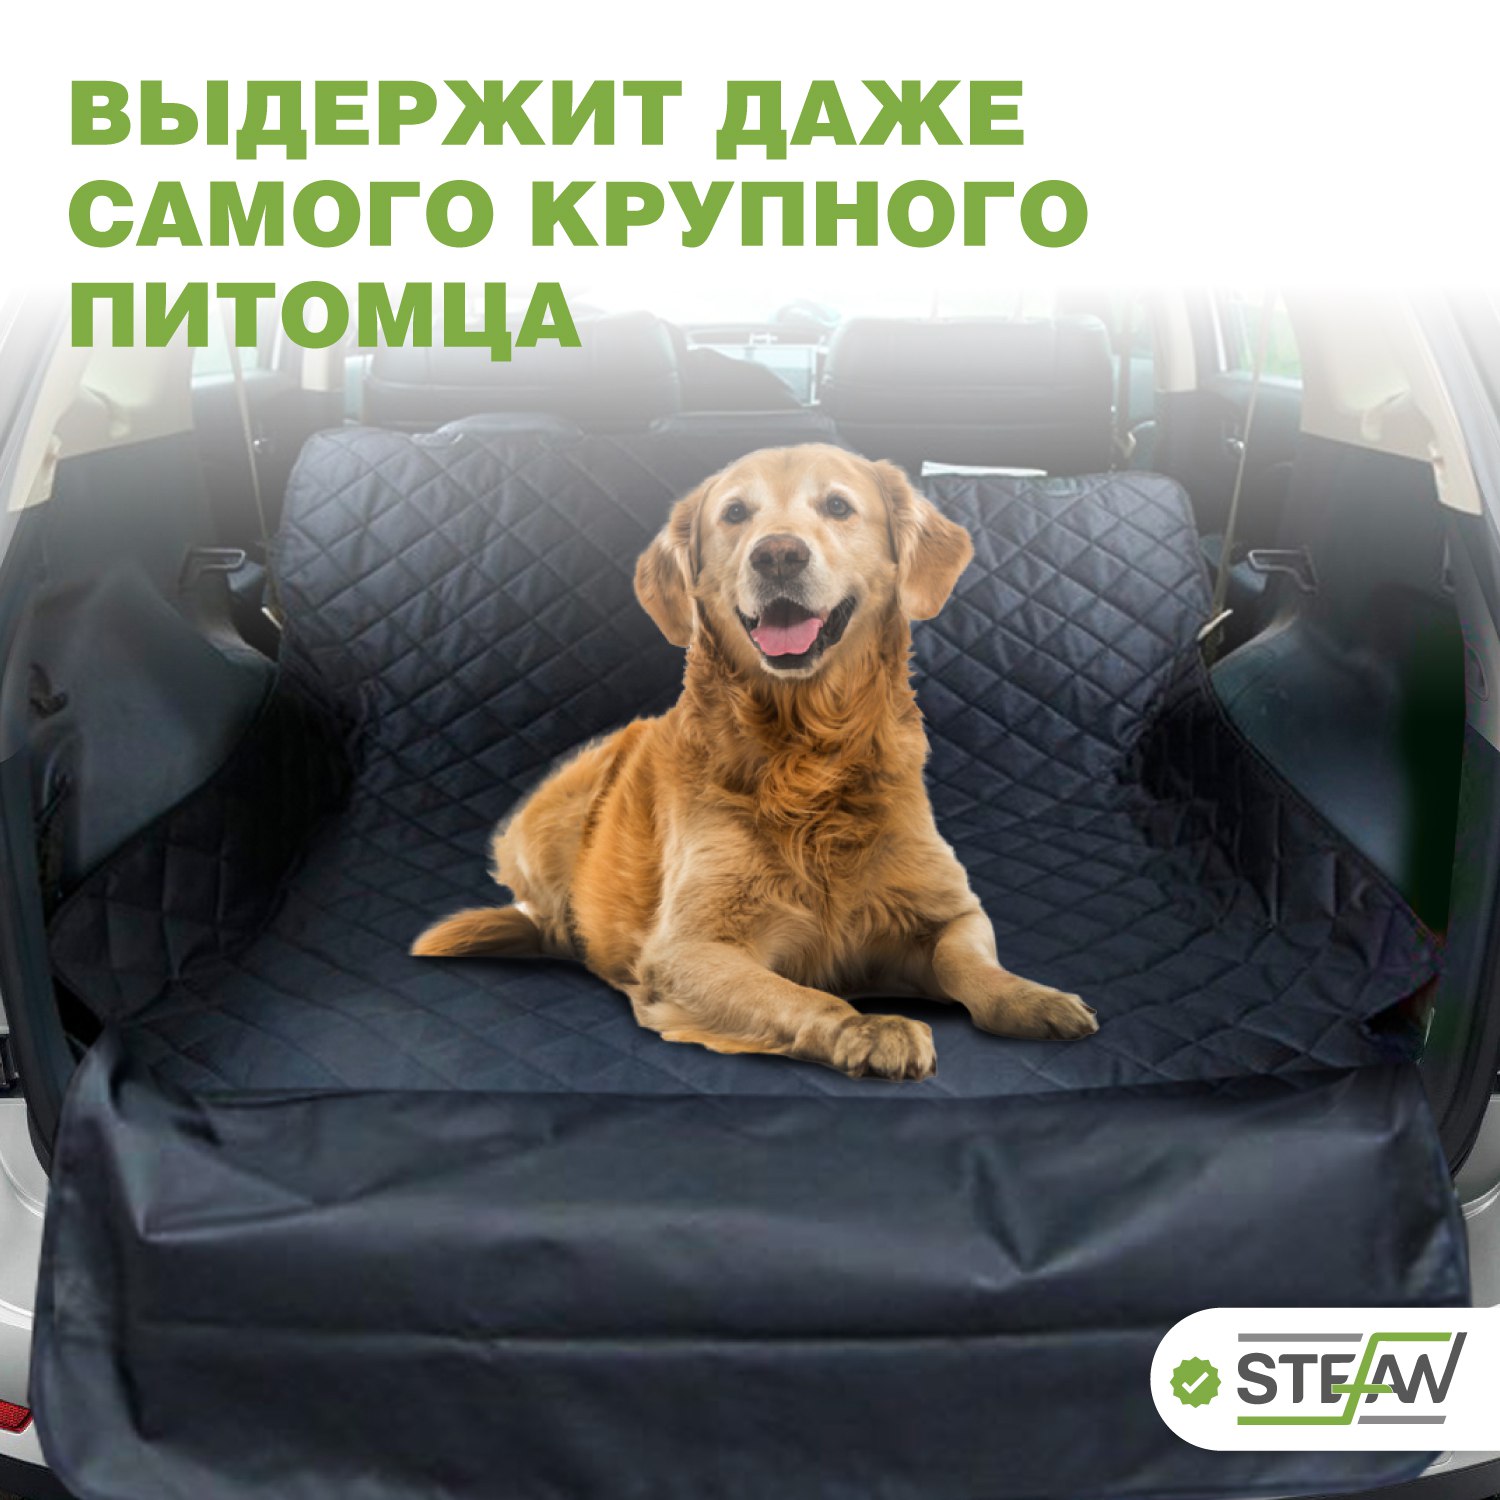 Автогамак для животных Stefan для багажника черный 135x205см - фото 3